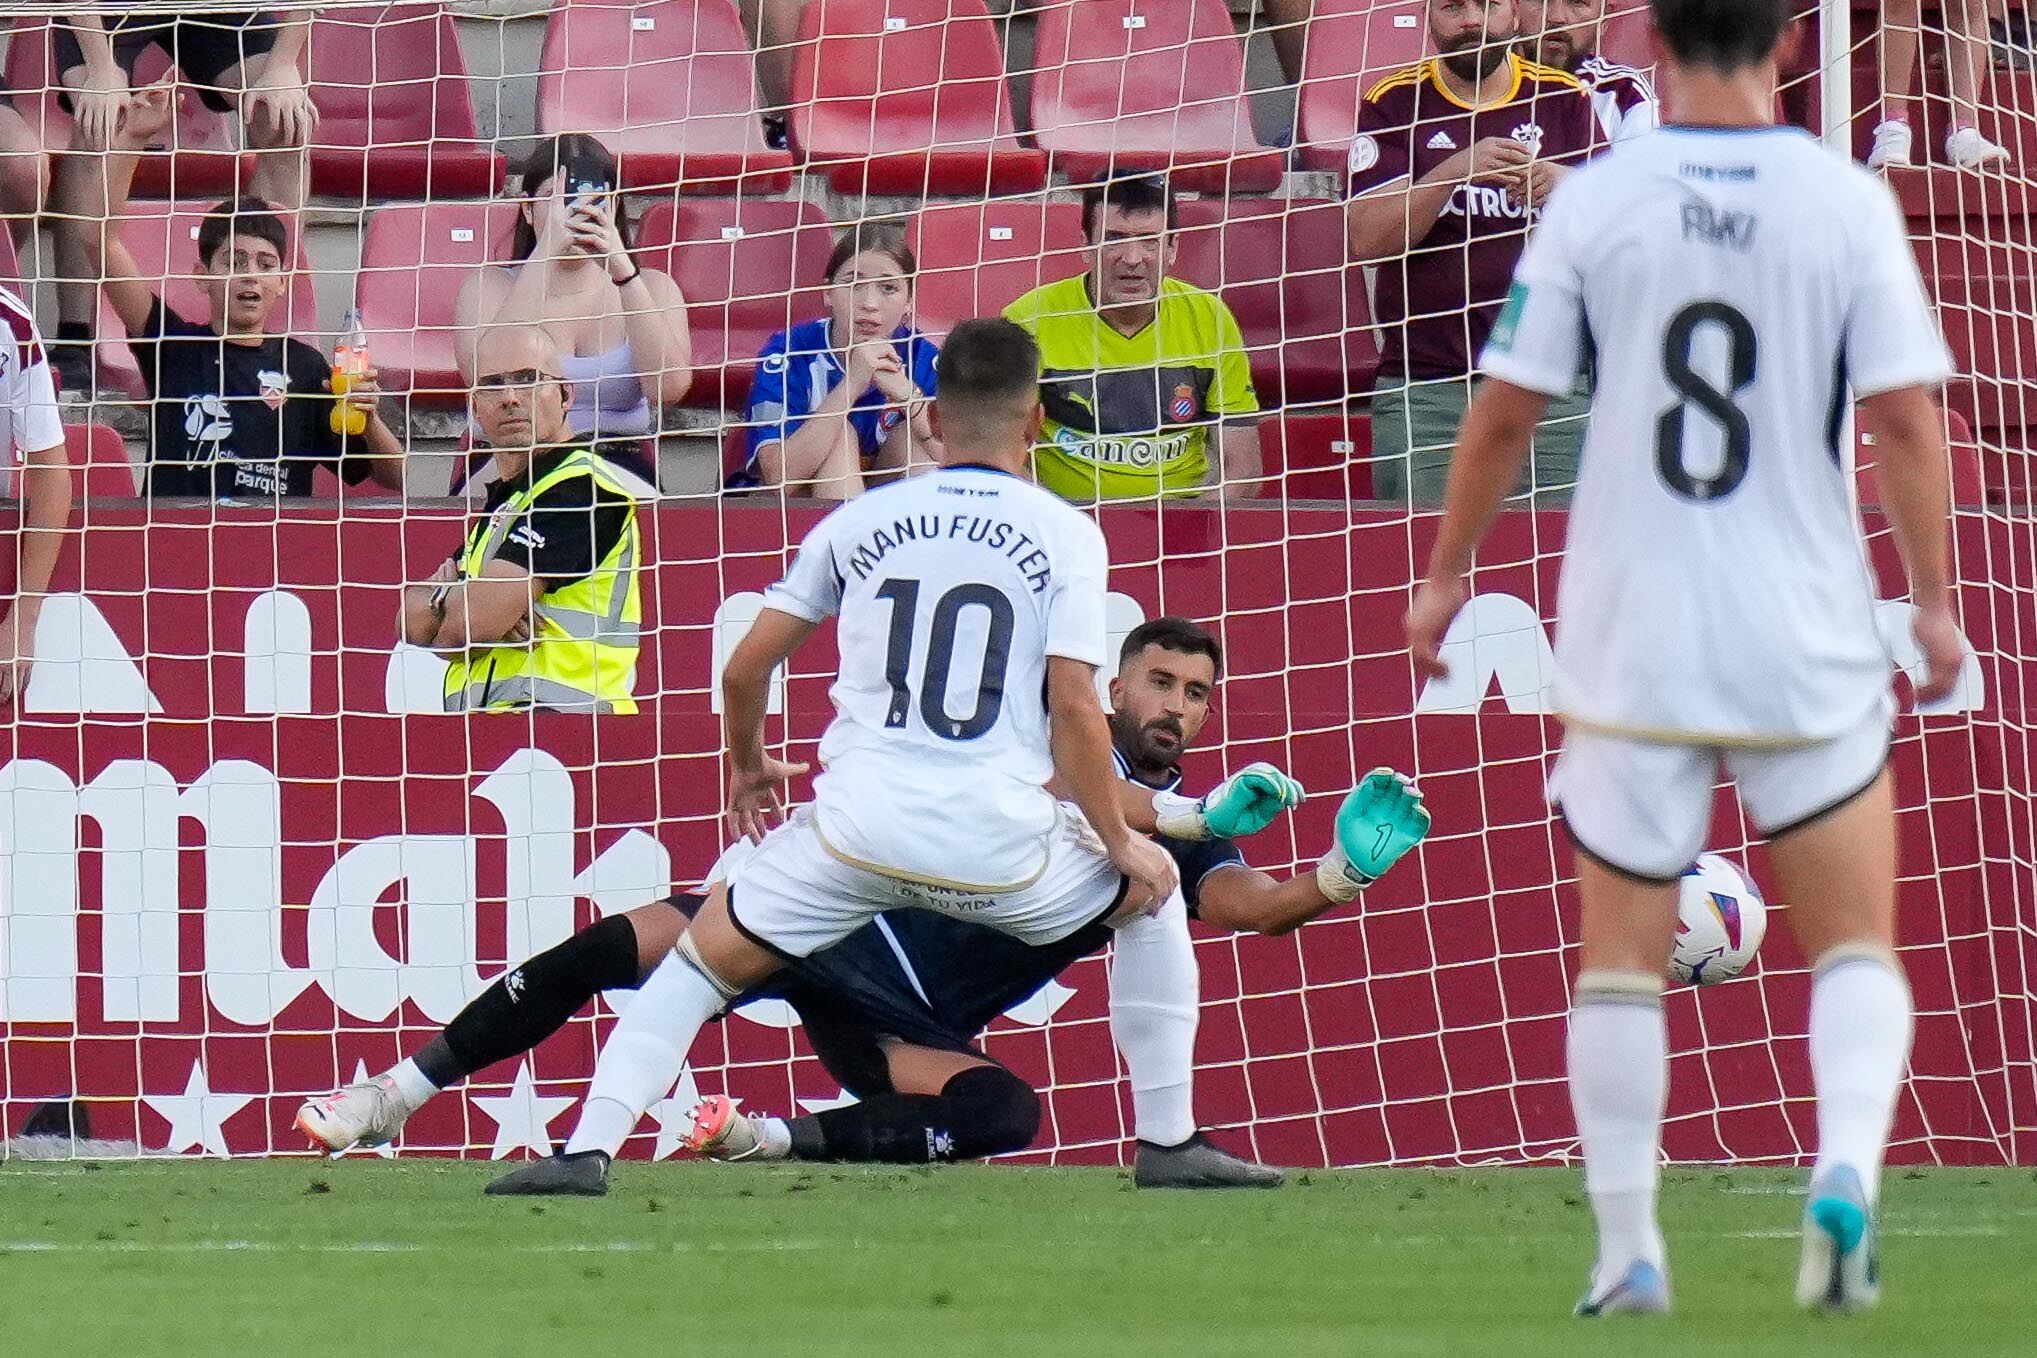 El portero del Espanyol fue clave en el empate de su equipo, tras detener dos penaltis a Manu Fuster. Pacheco demostró que marcara a los pericos esta temporada no va a ser fácil.